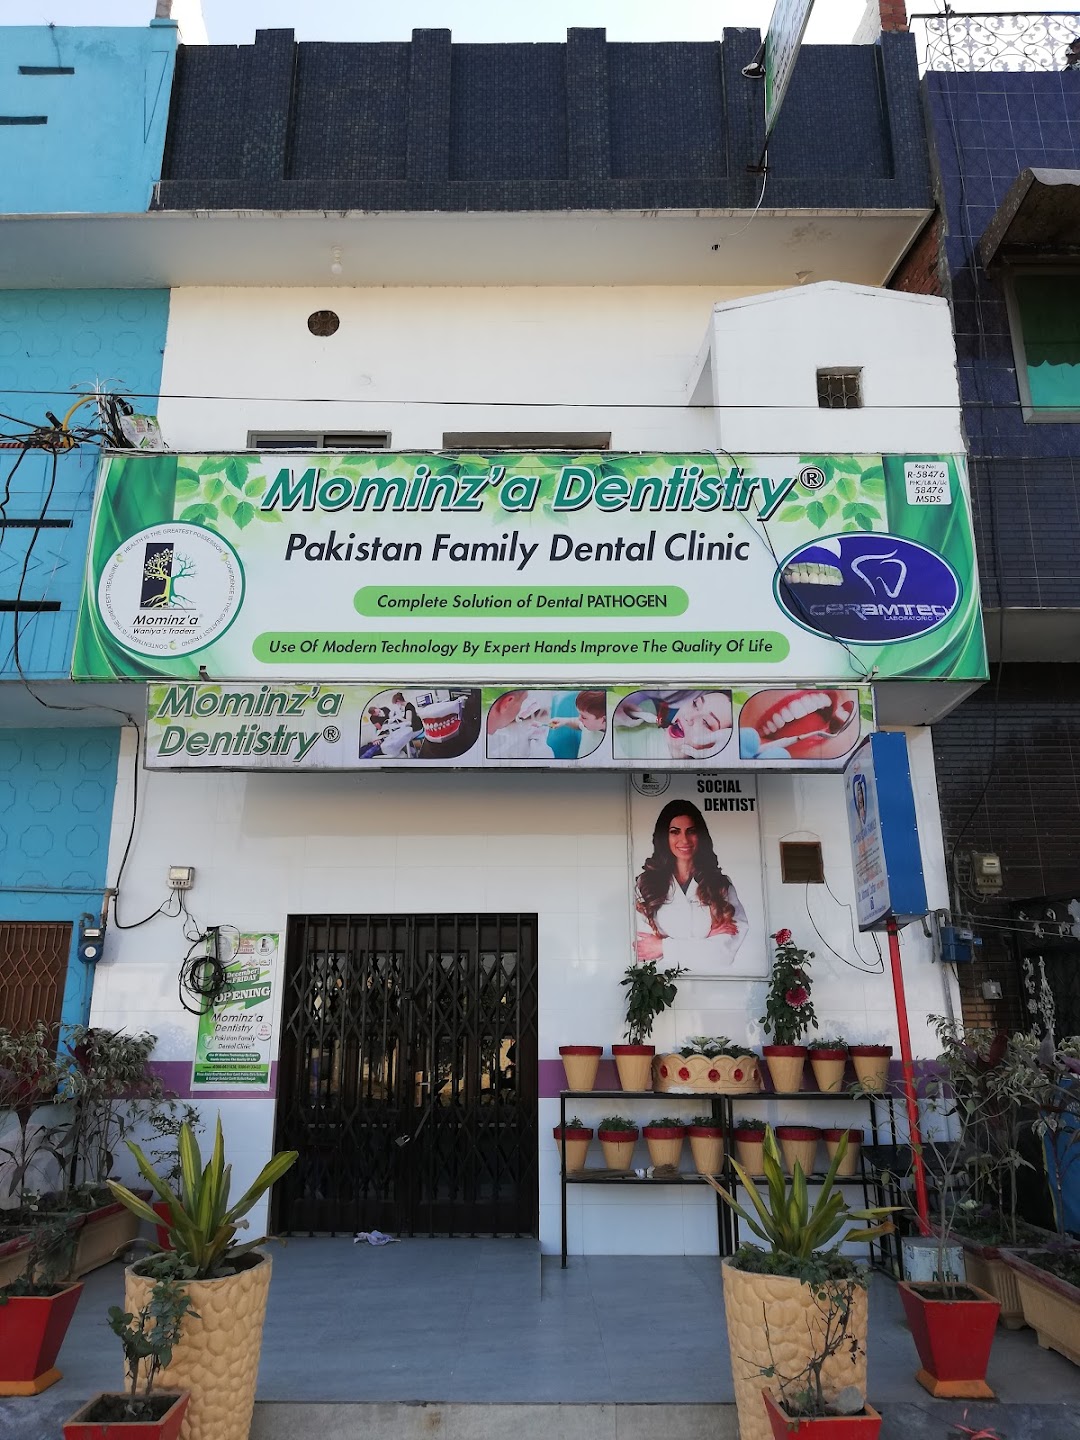 Pakistan family dental clinic